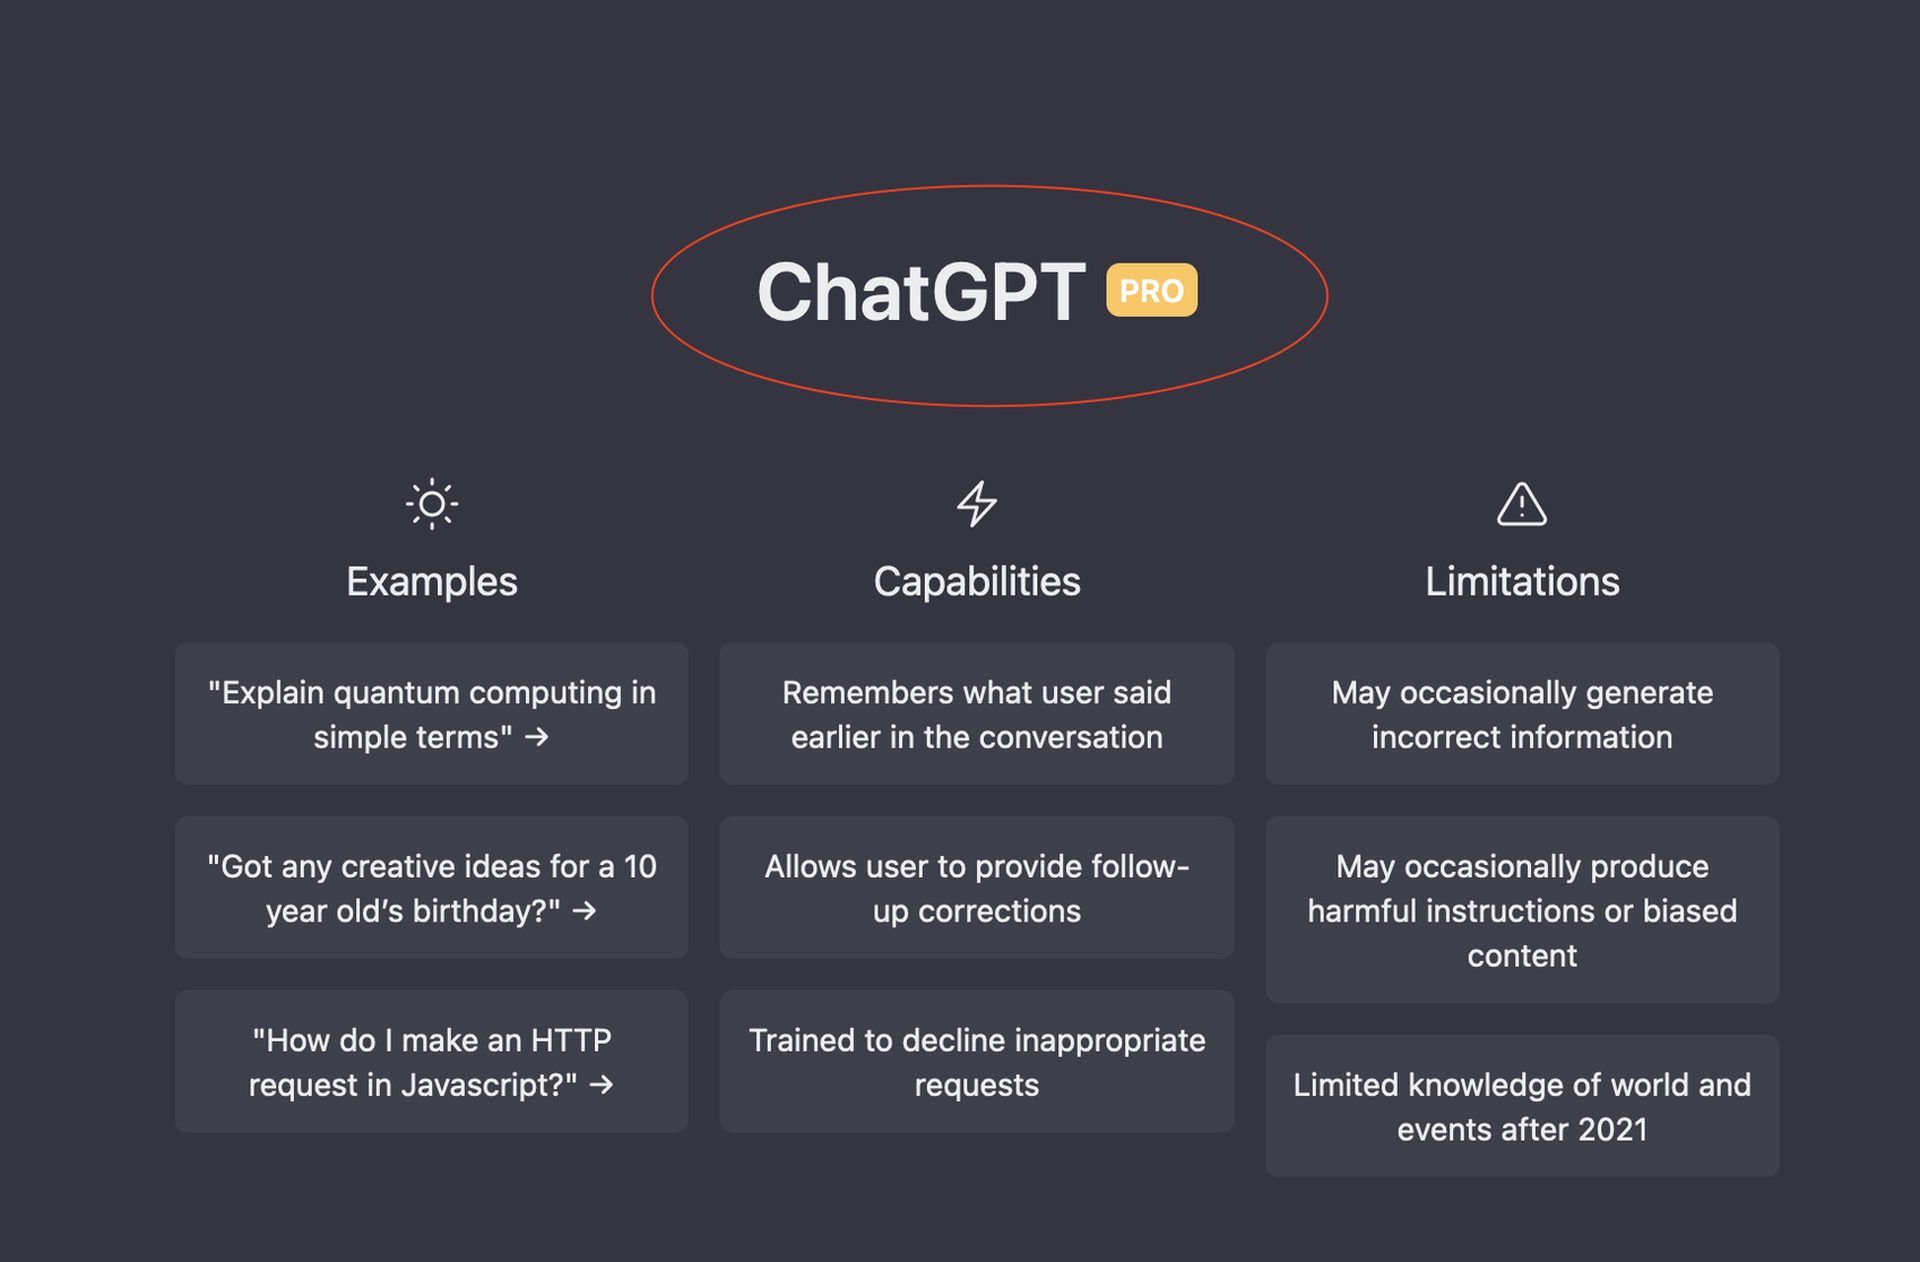 Что такое ChatGPT Professional?  Узнайте цену, функции и список ожидания ChatGPT Pro.  Бесплатное сравнение ChatGPT Pro и ChatGPT также здесь!